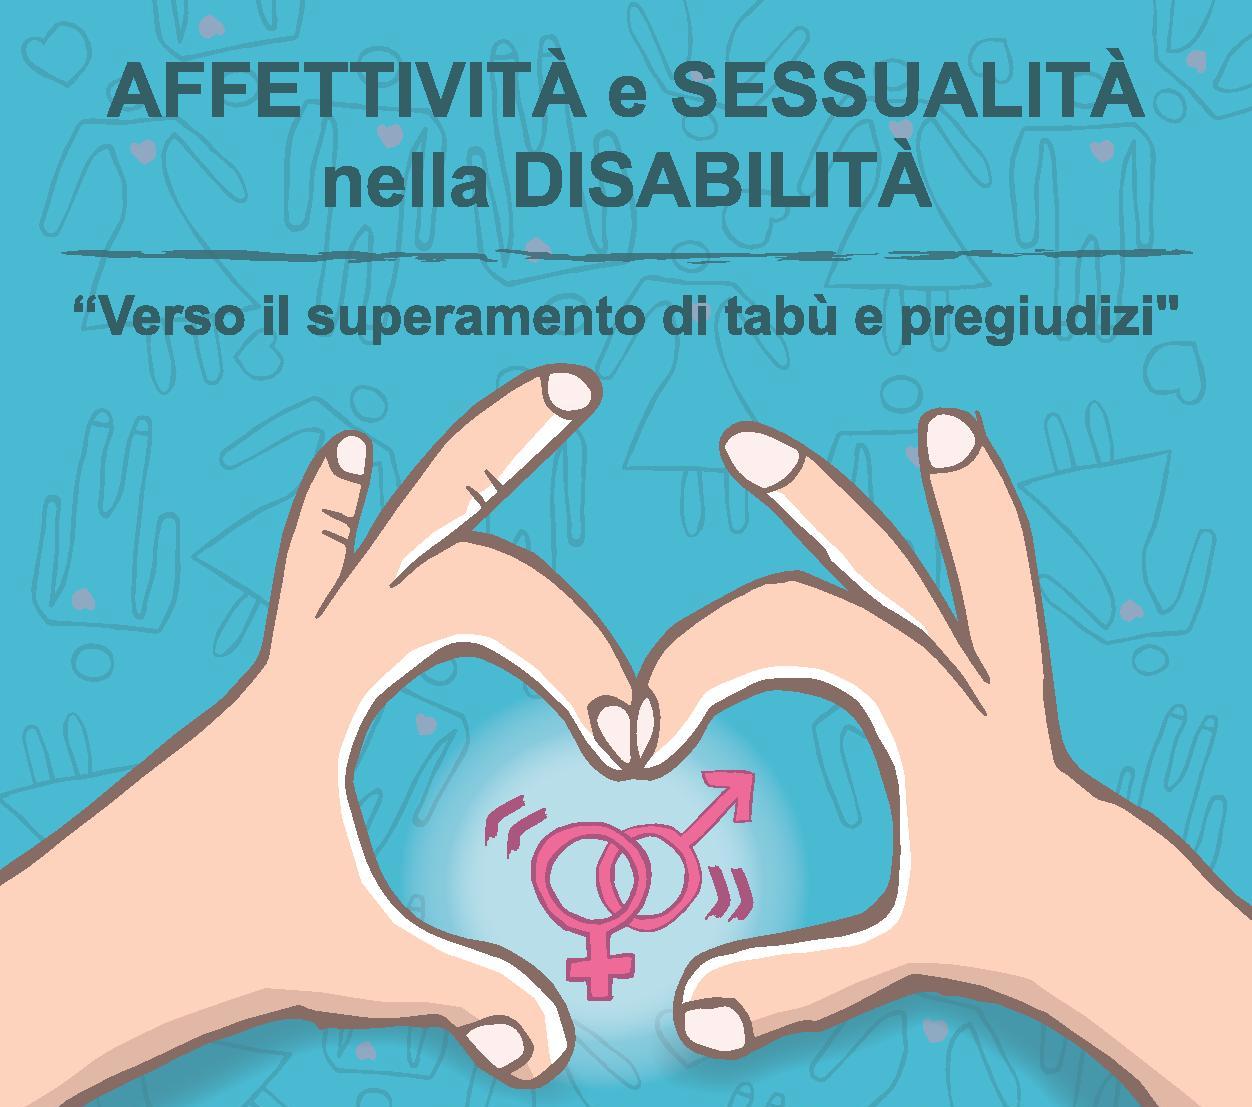 Affettività e sessualità nella disabilità: venerdì convegno a Fano - fanoinforma